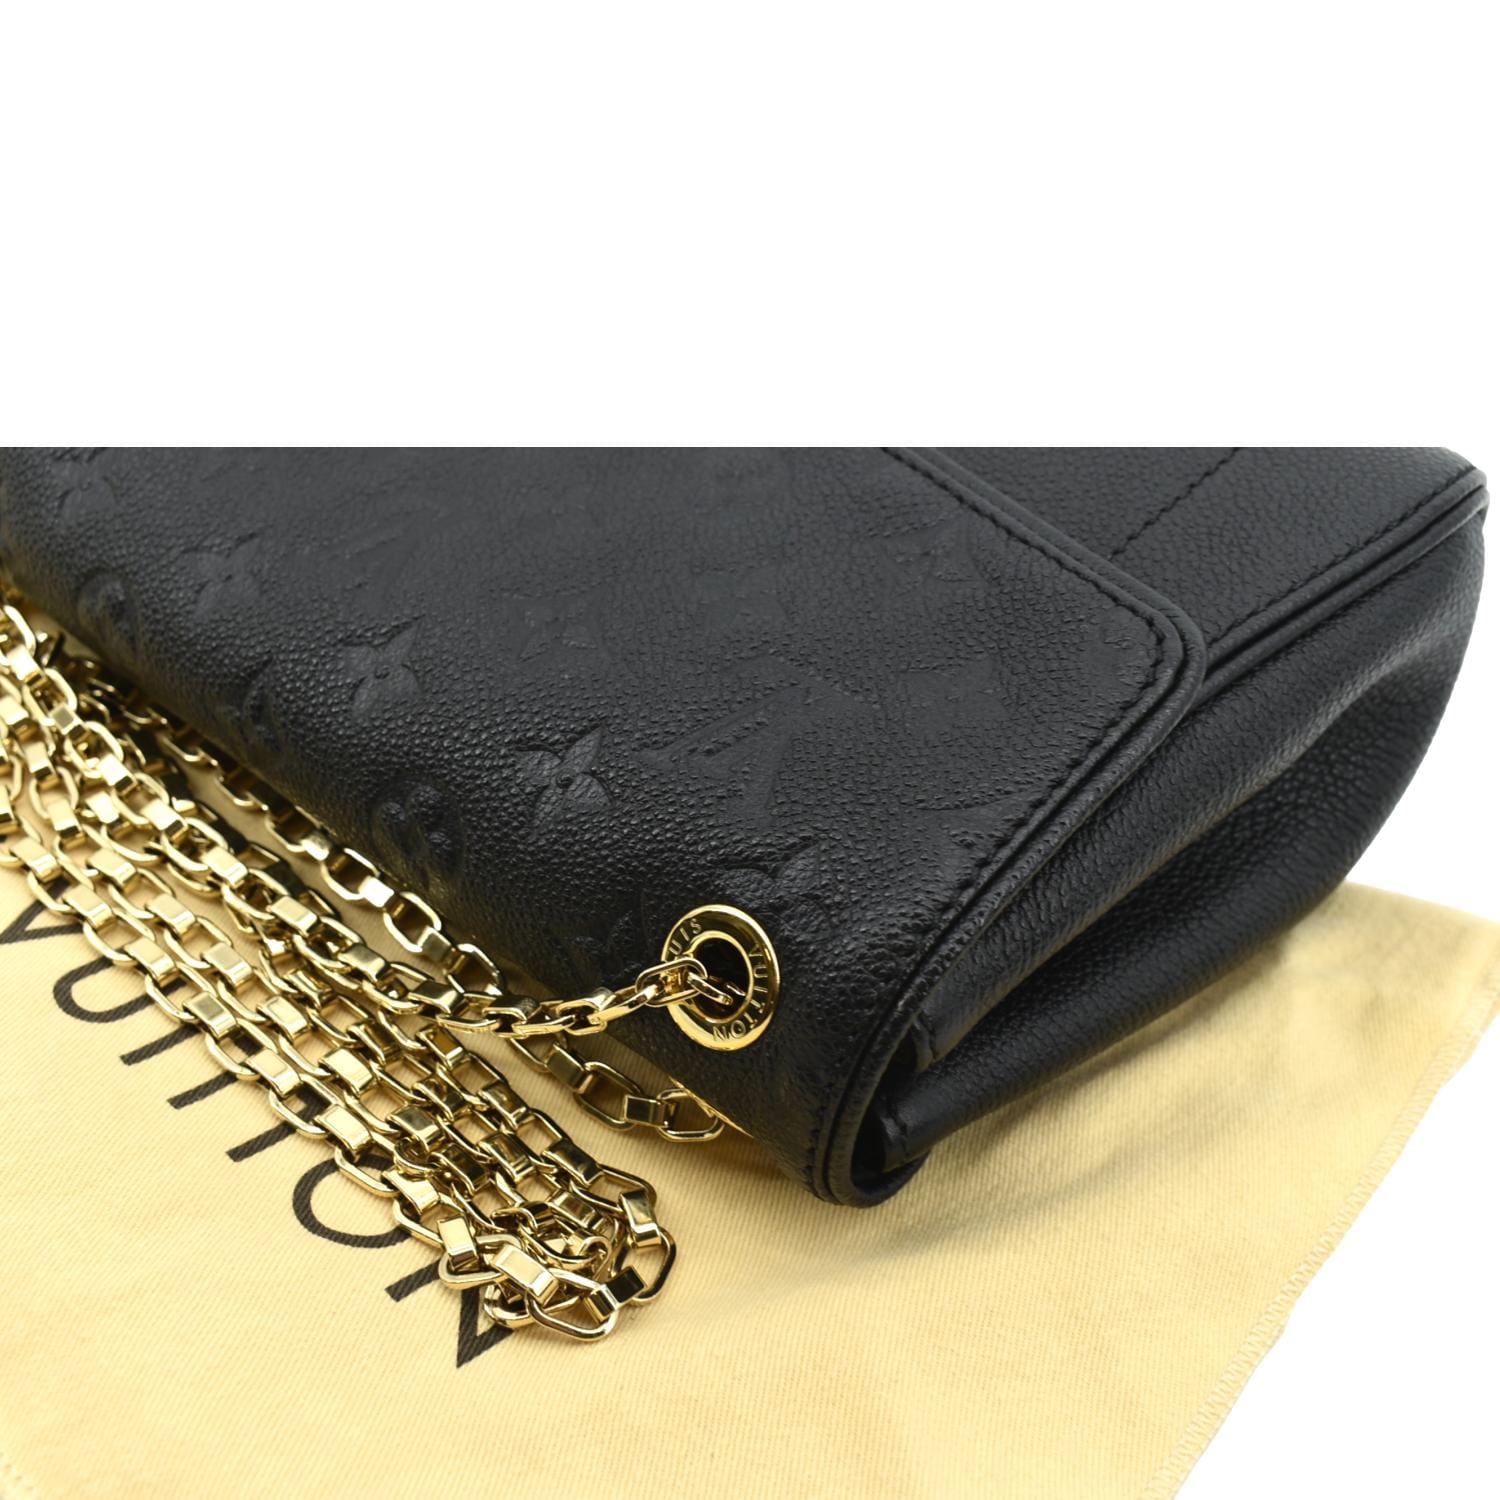 Saint Germain MM Shoulder bag in Monogram Empreinte leather, Gold Hard